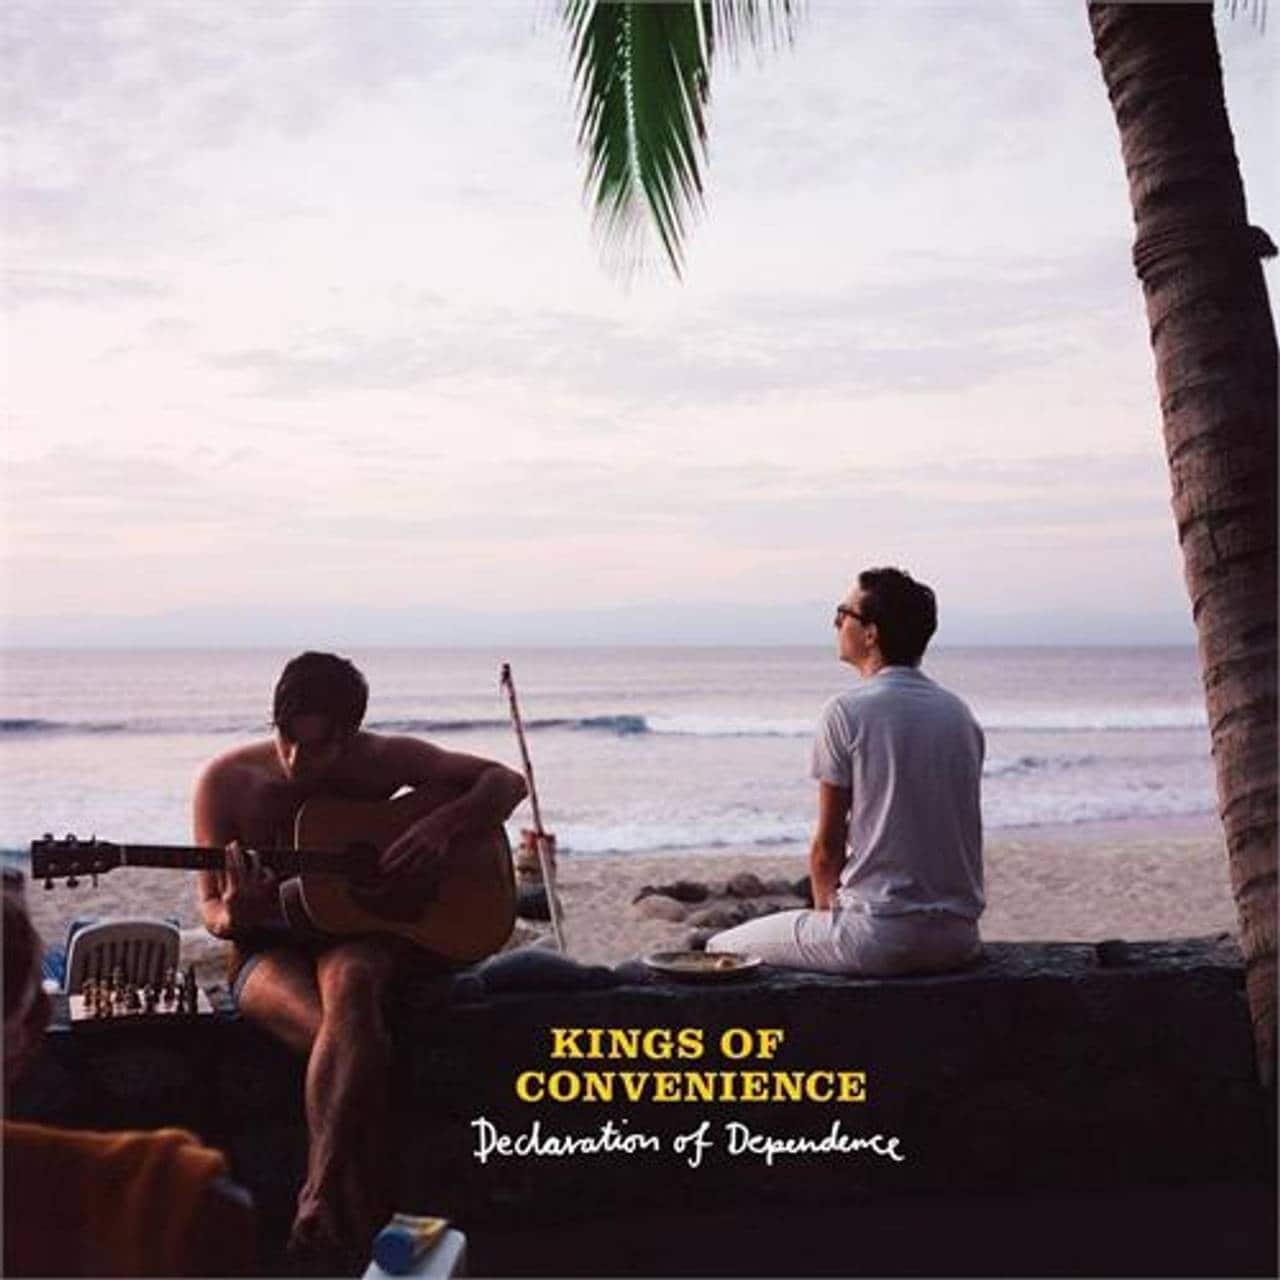 Declaration of Dependence er et musikkalbum med Kings of Convenience, utgitt den 20. oktober 2009.